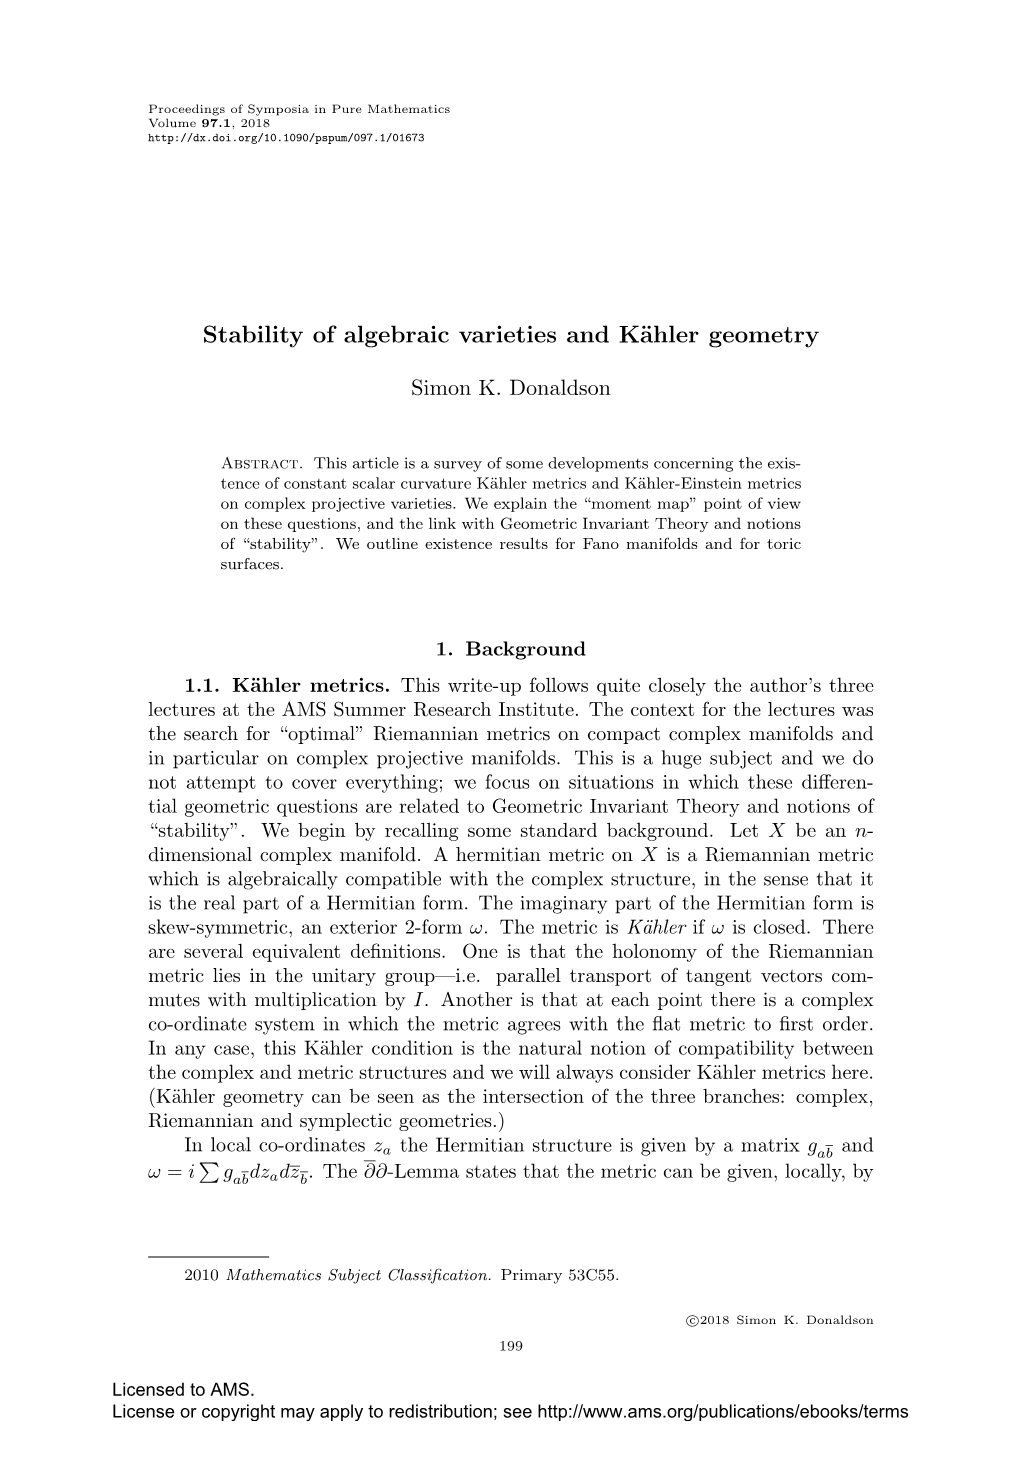 Stability of Algebraic Varieties and Kähler Geometry